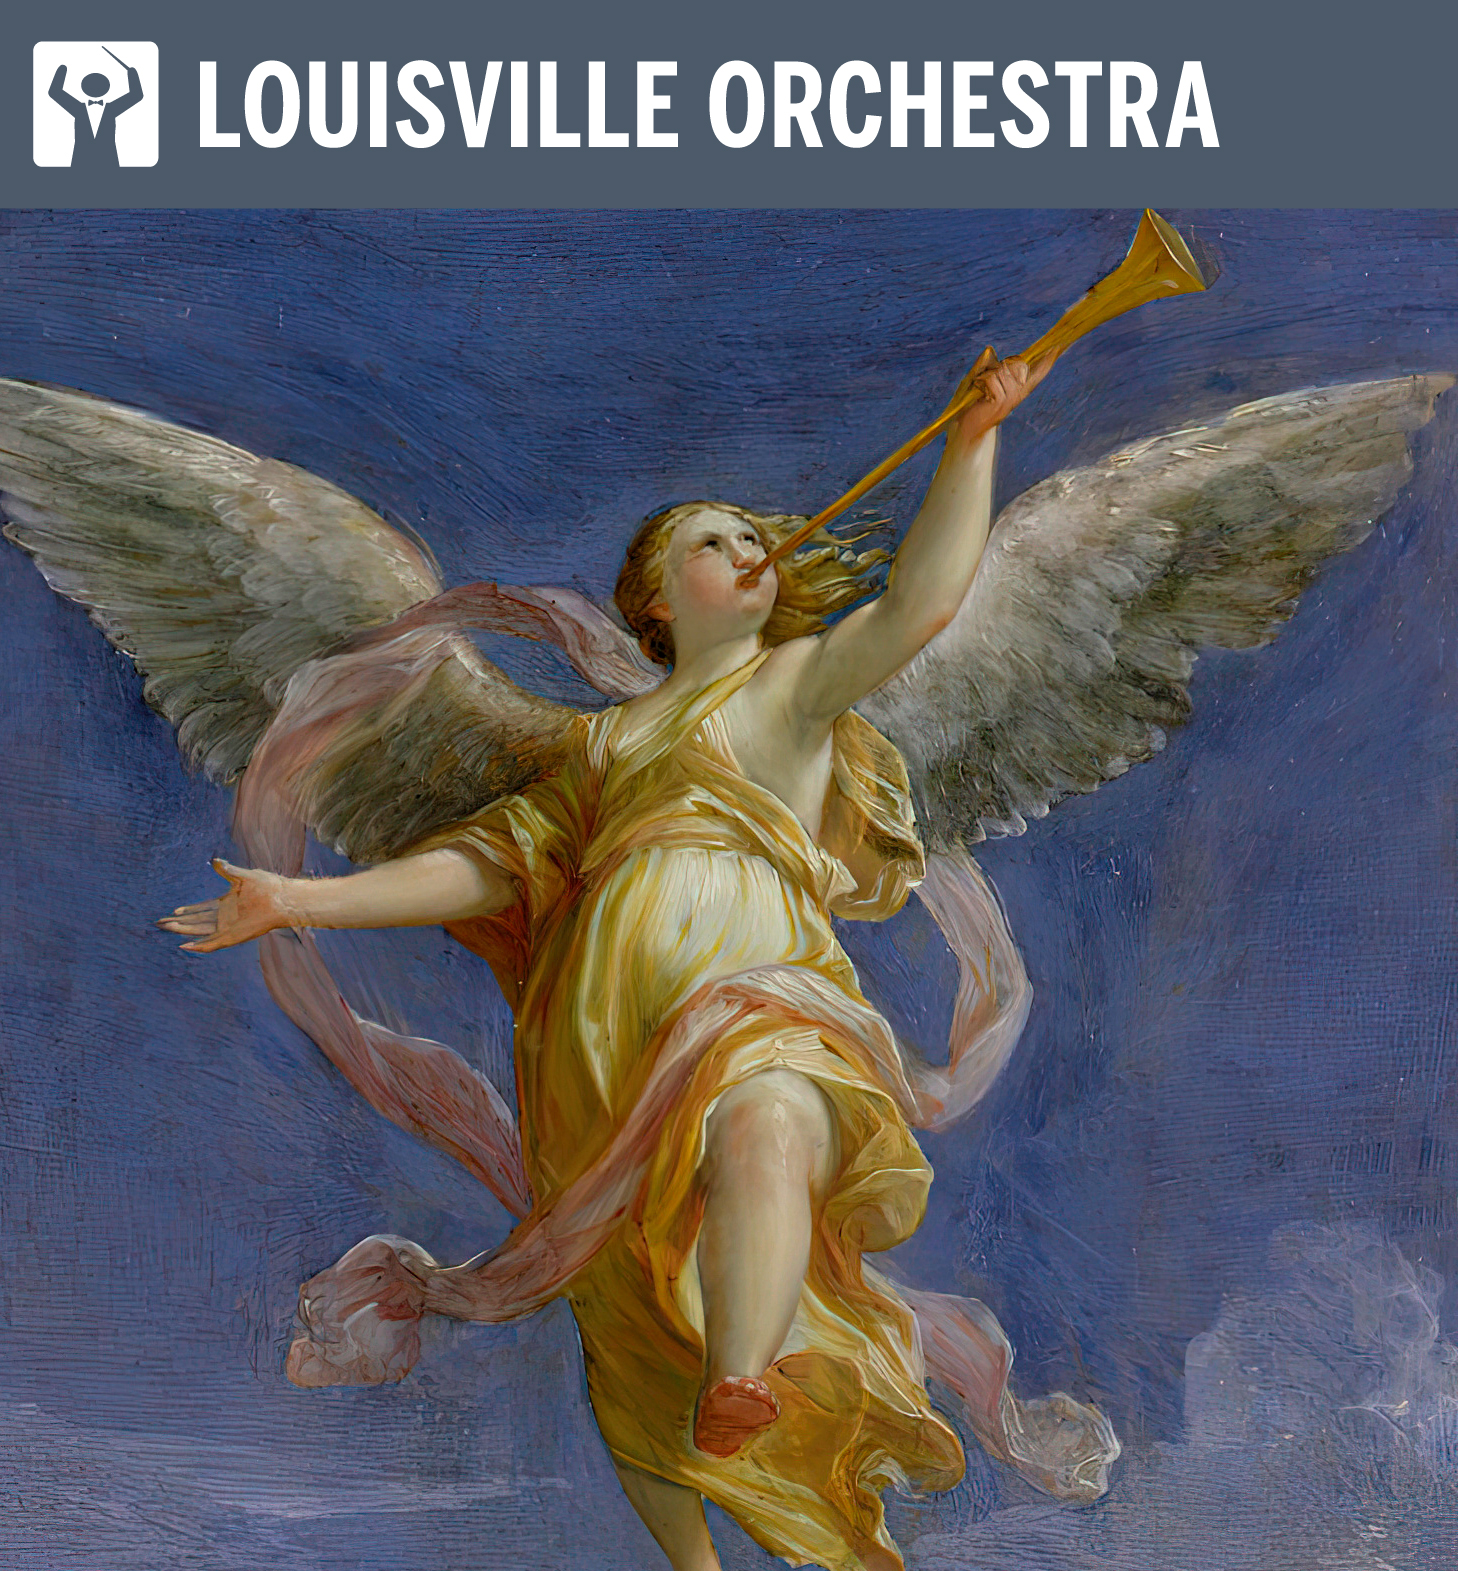 Louisville Orchestra